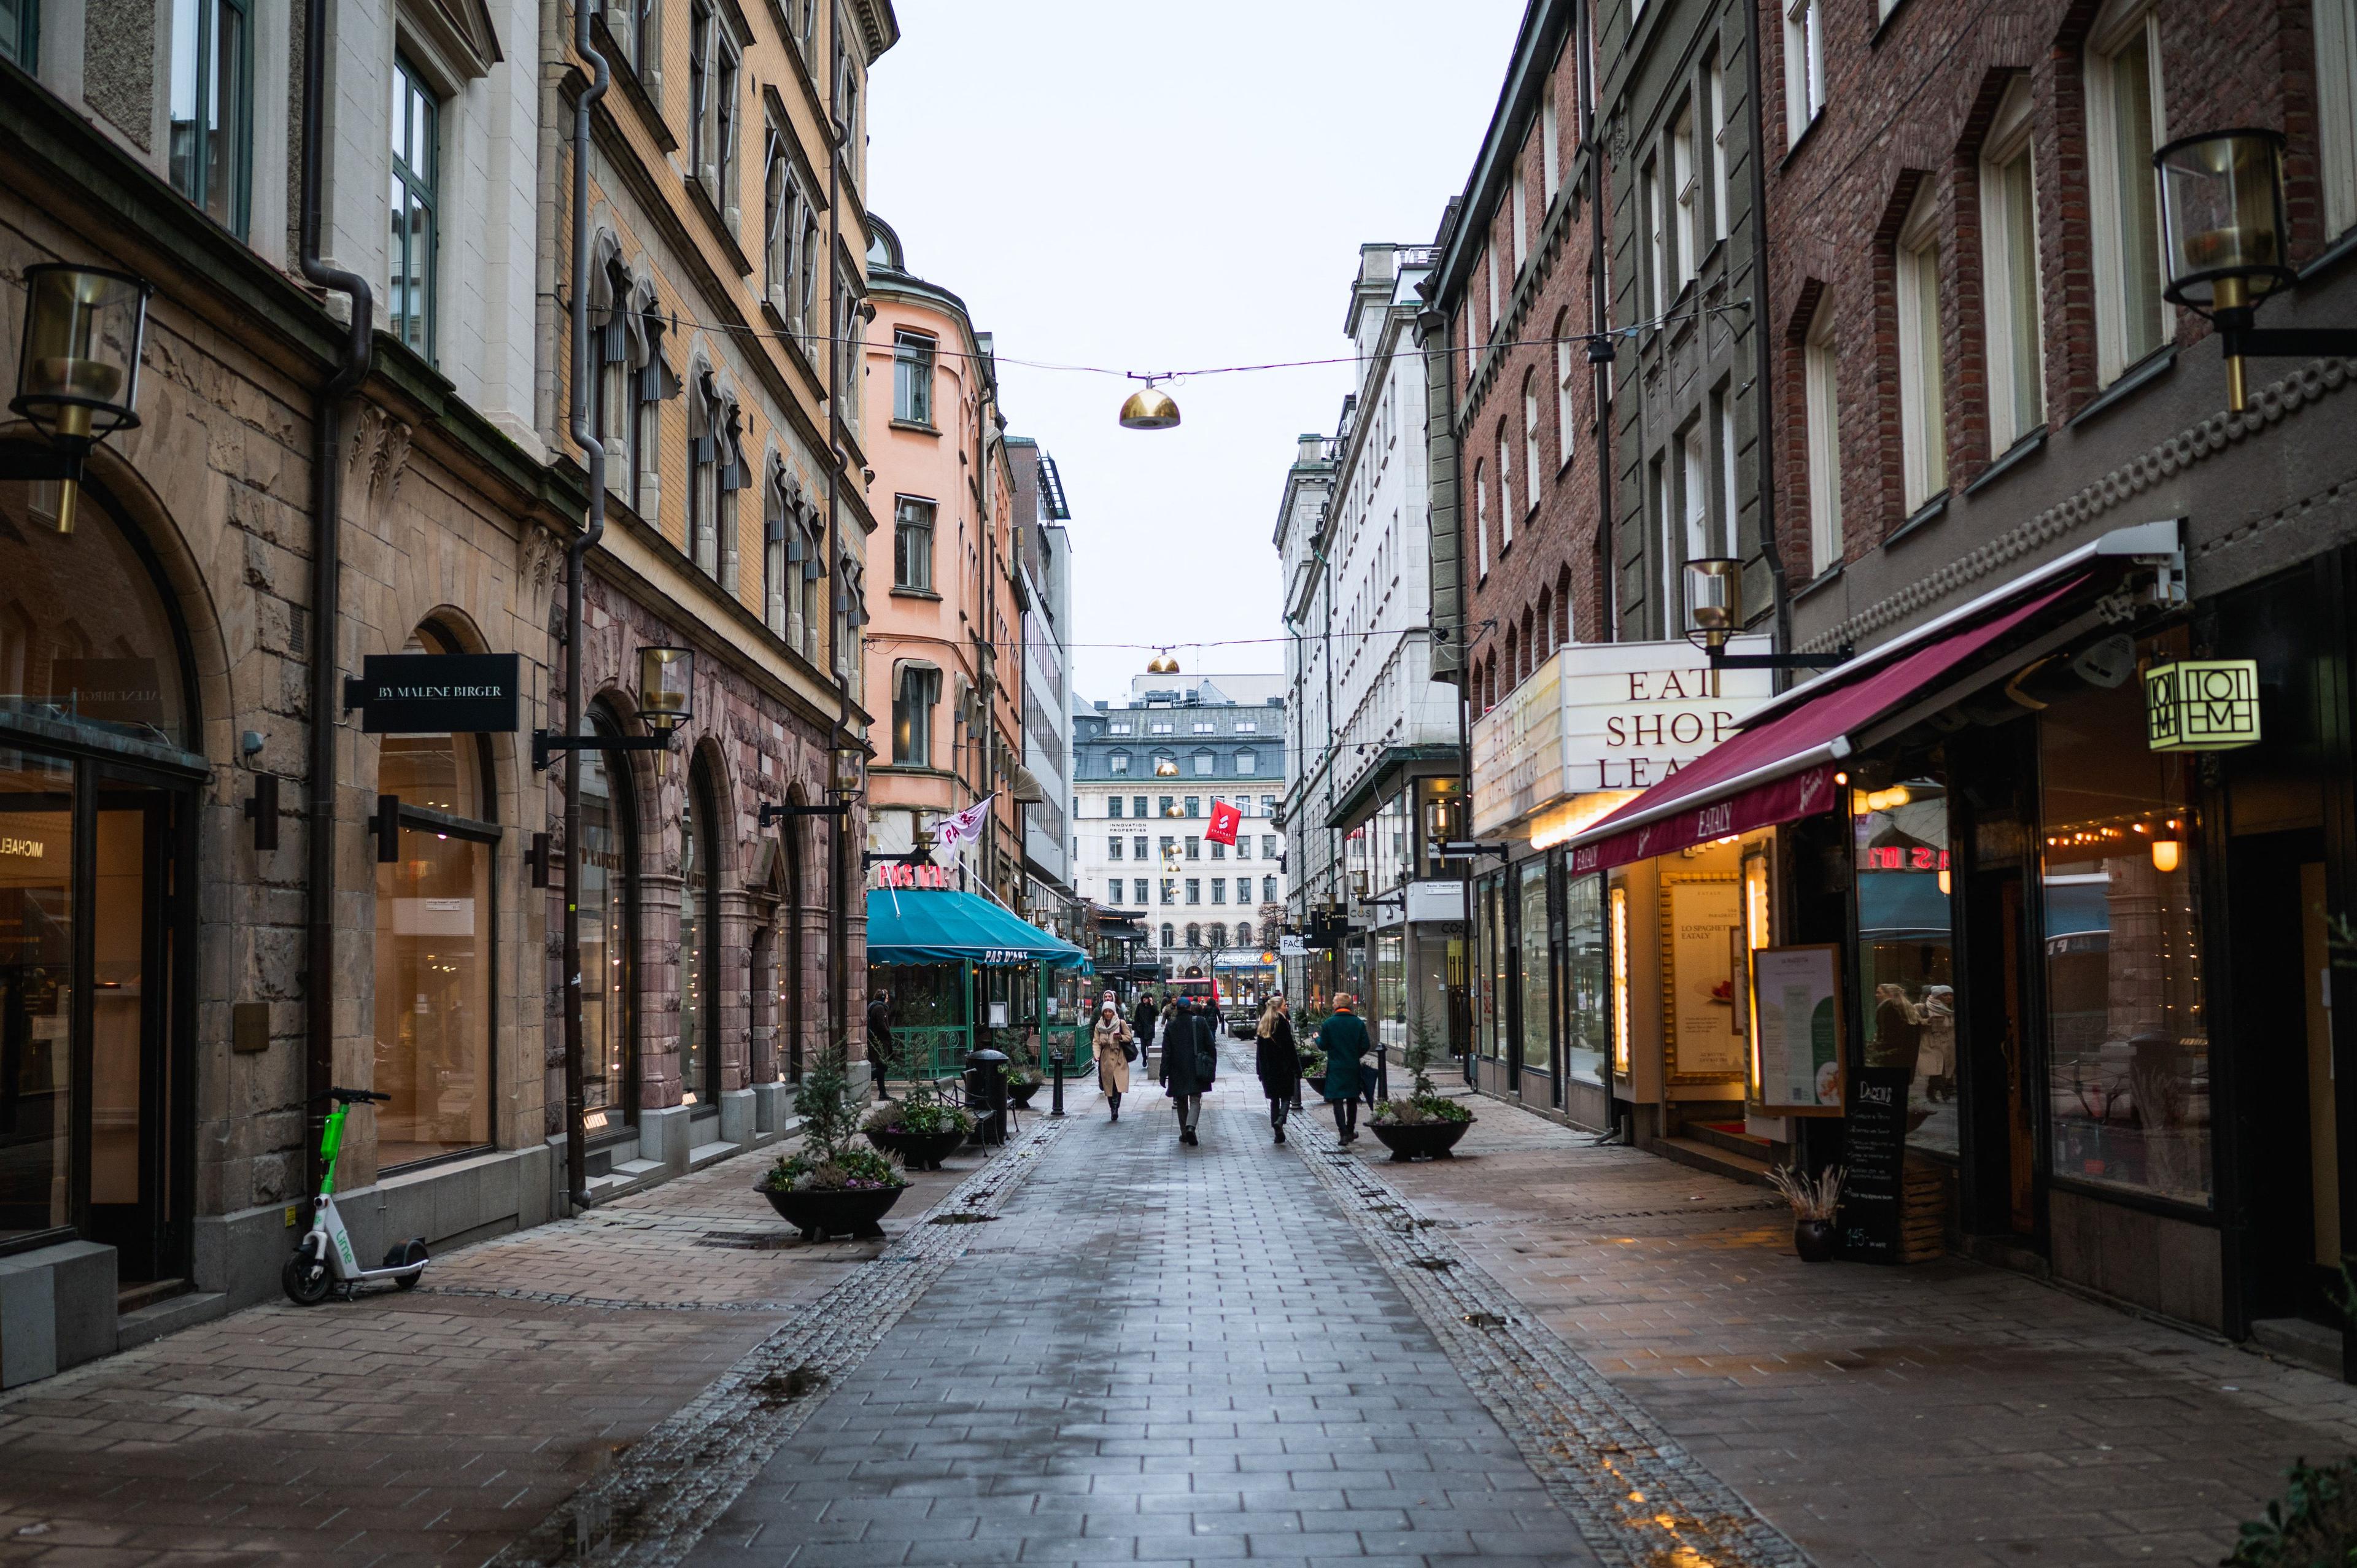 Många företag i Sverige har det tufft ekonomiskt just nu. Enbart i mars i år gick drygt 800 aktiebolag i konkurs, enligt färsk statistik från Syna. Foto: Jonathan Näckstrand/AFP via Getty Images